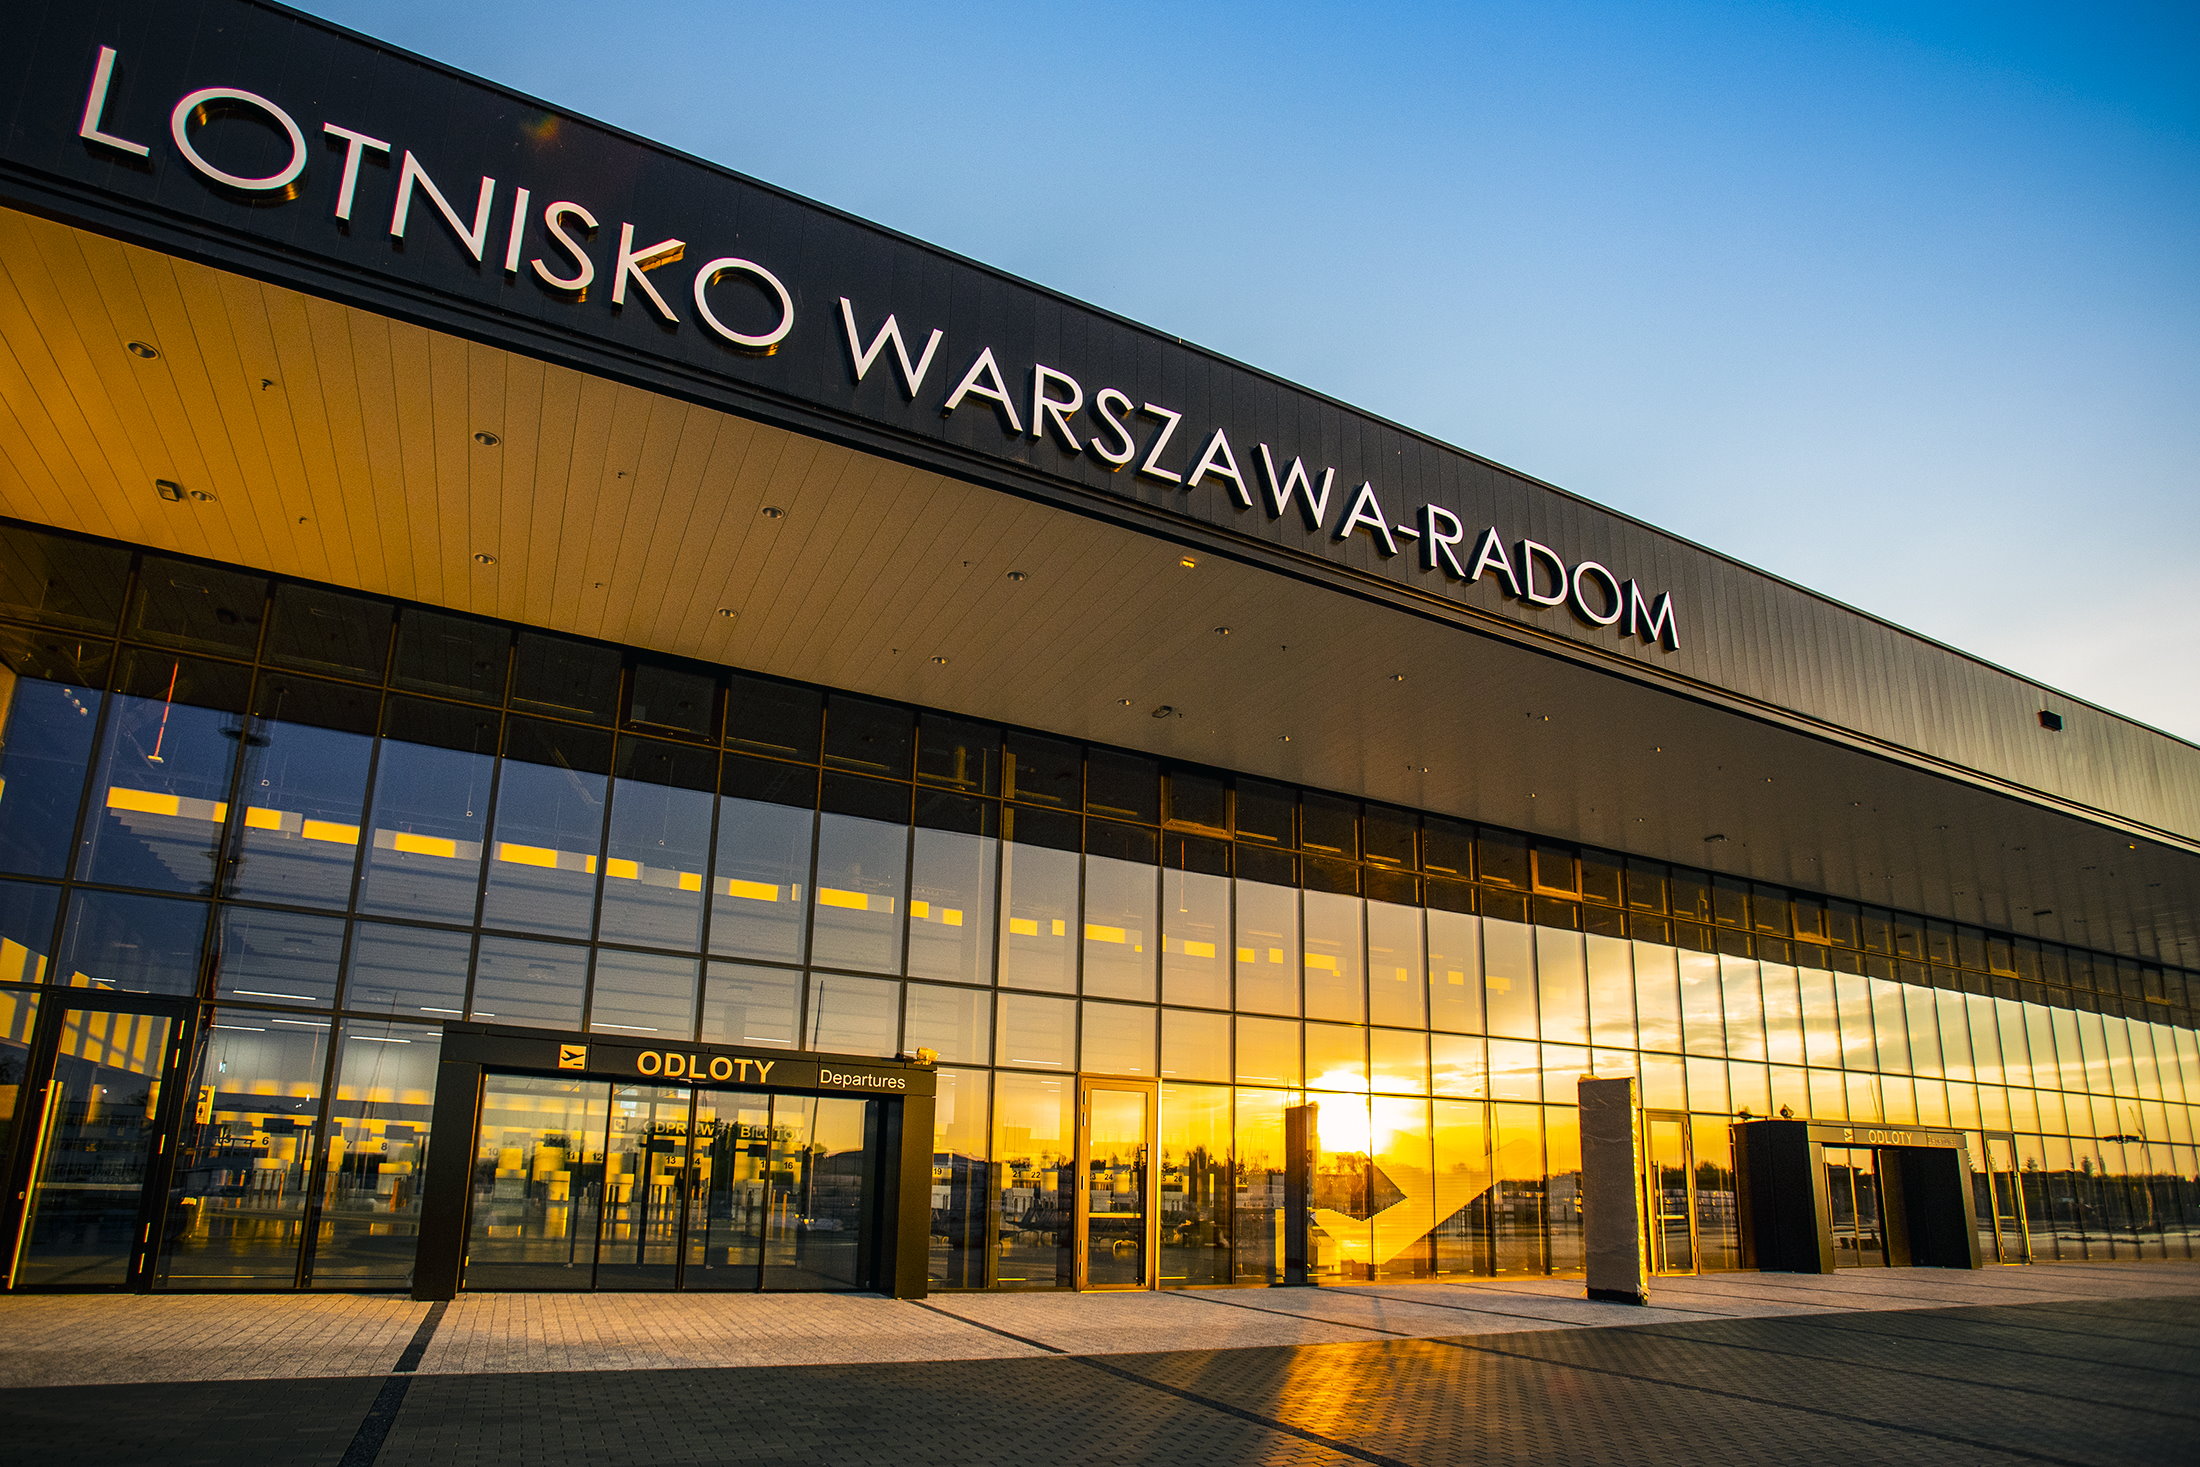 Lotnisko Warszawa-Radom: 60 000 odprawionych pasażerów